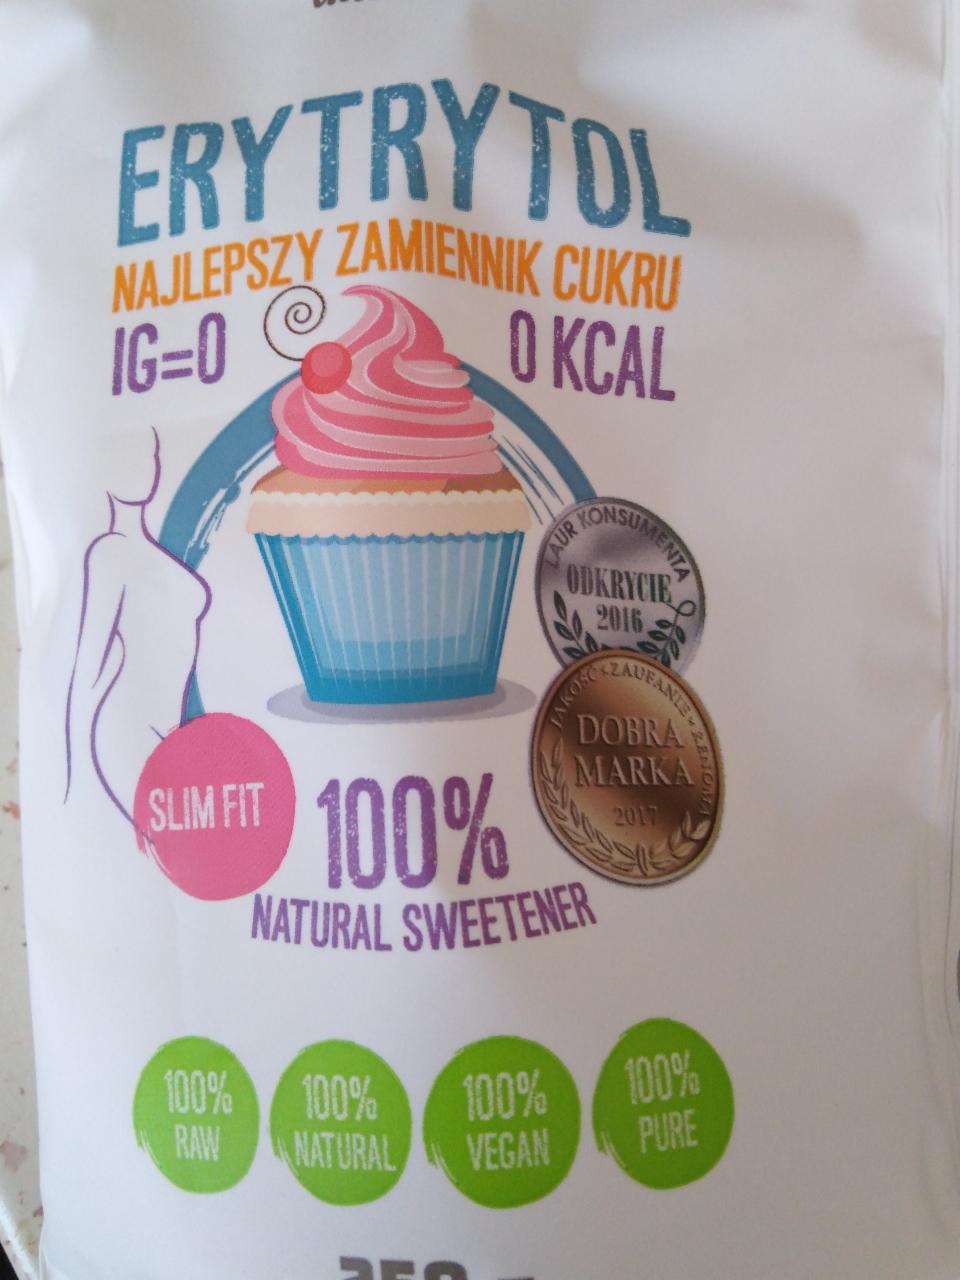 Fotografie - Erytrytol 100% Natural Sweetener Intenson